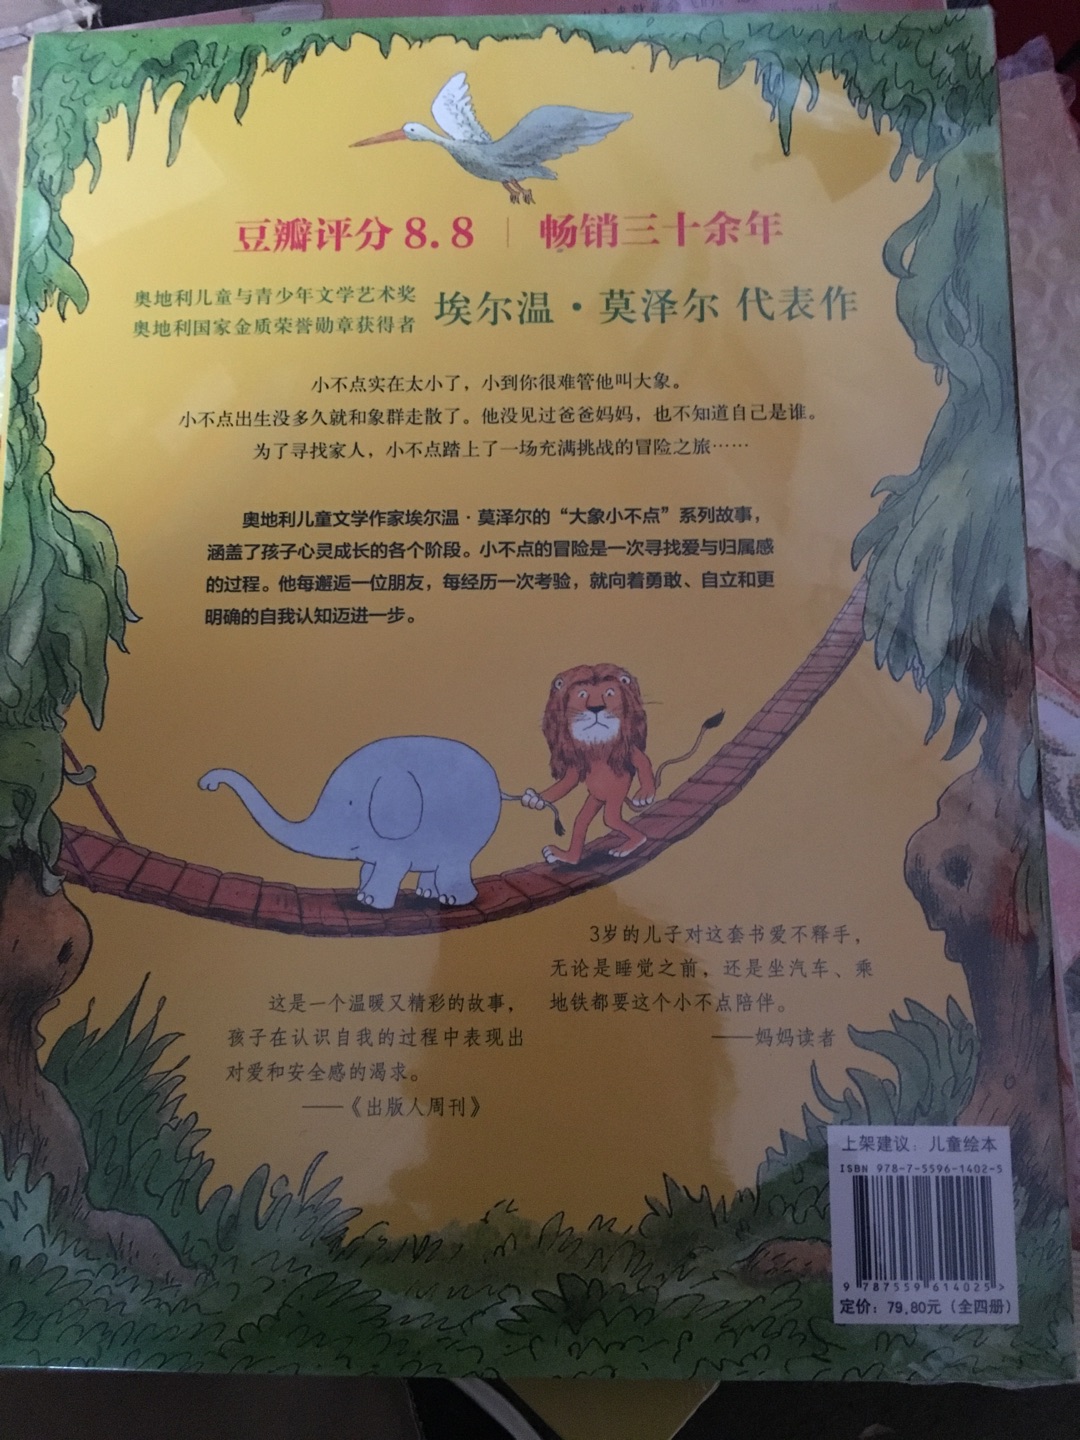 大象小不点这套书之前被人种草了很久，现在有活动了当然要拿下，故事情节很有趣，希望孩子能够喜欢这套书！